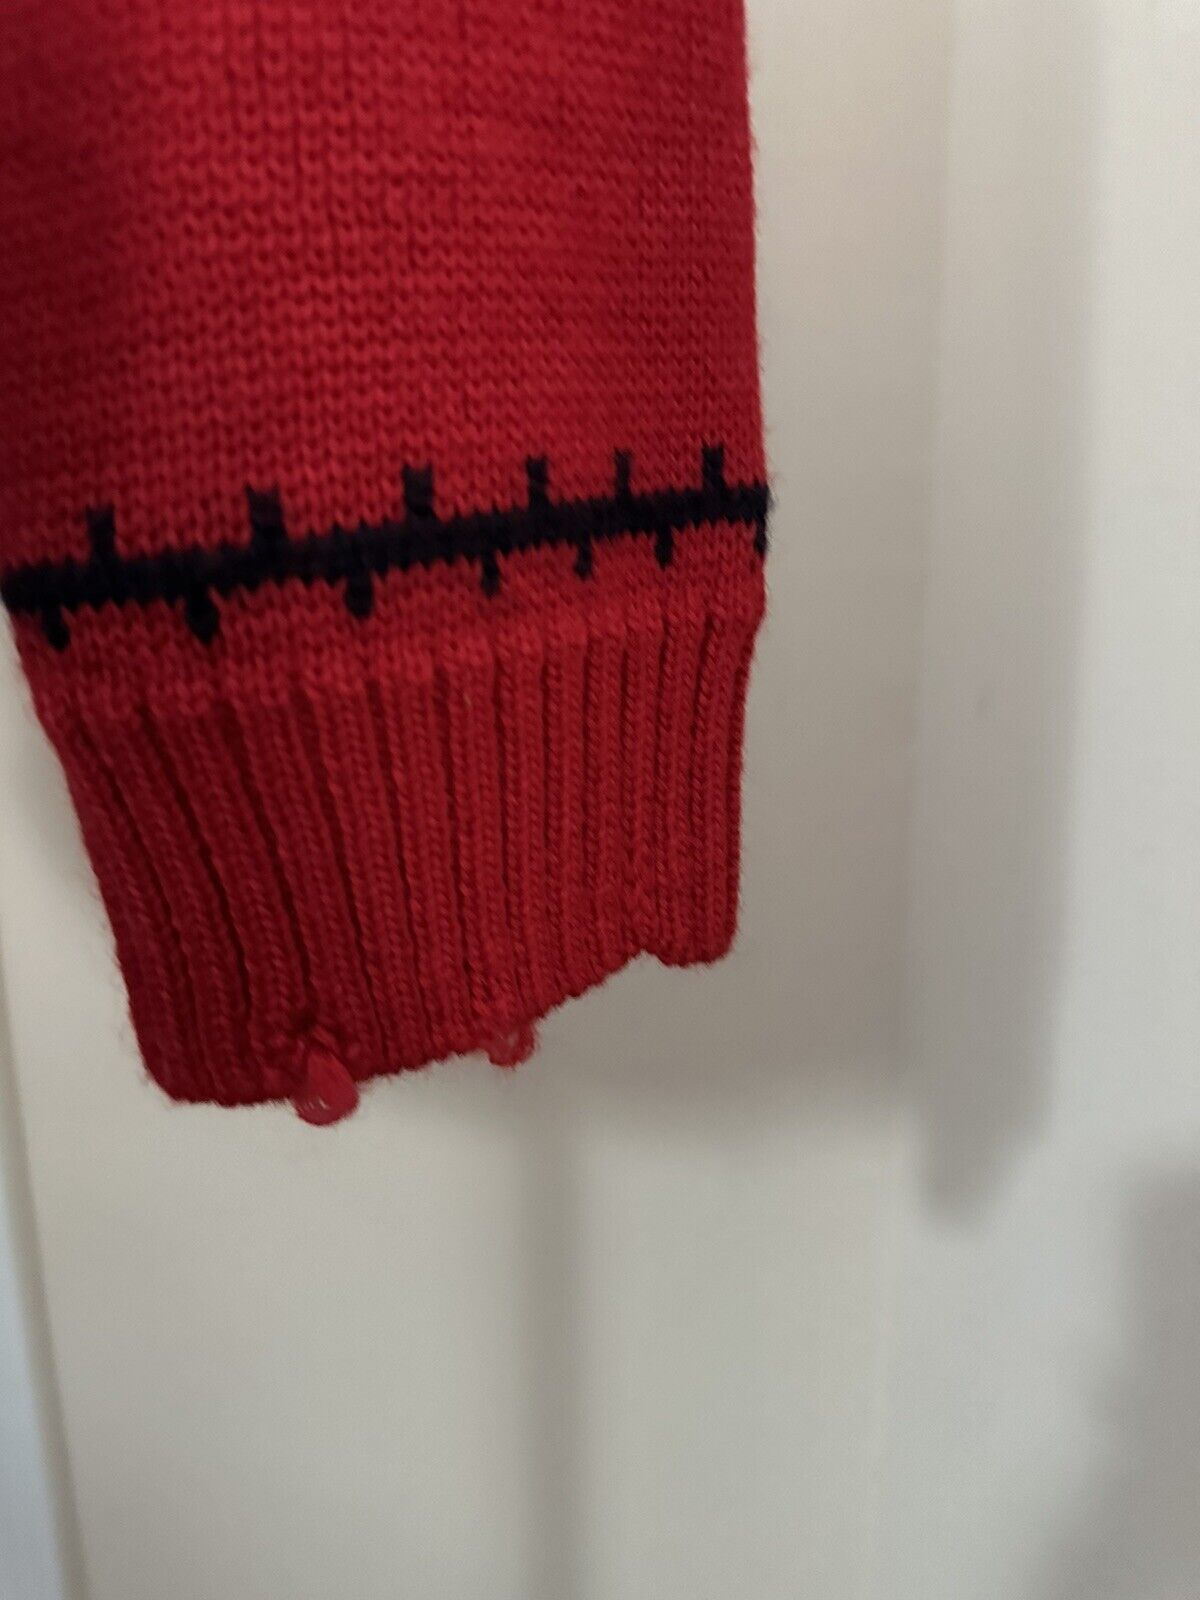 NWT $2490 Saint Laurent Мужской свитер из шерстяного жаккарда Красный XXL Италия